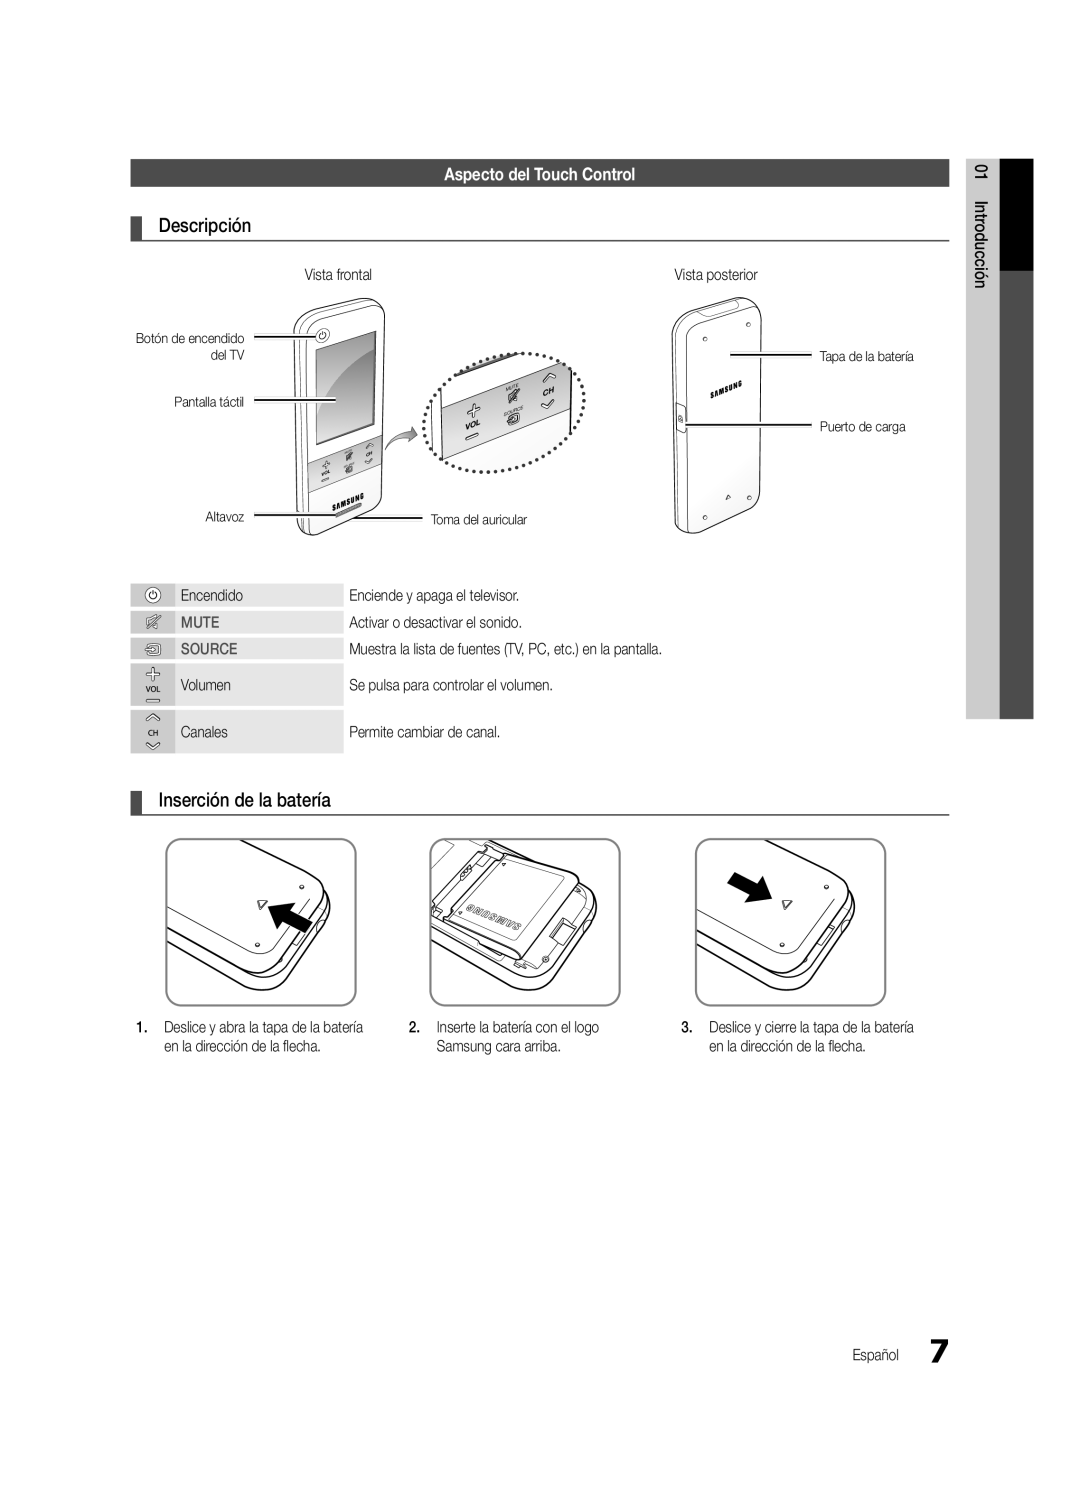 Samsung Series C9 user manual Aspecto del Touch Control, Descripción, Inserción de la batería, Mute, Source, Introducción 